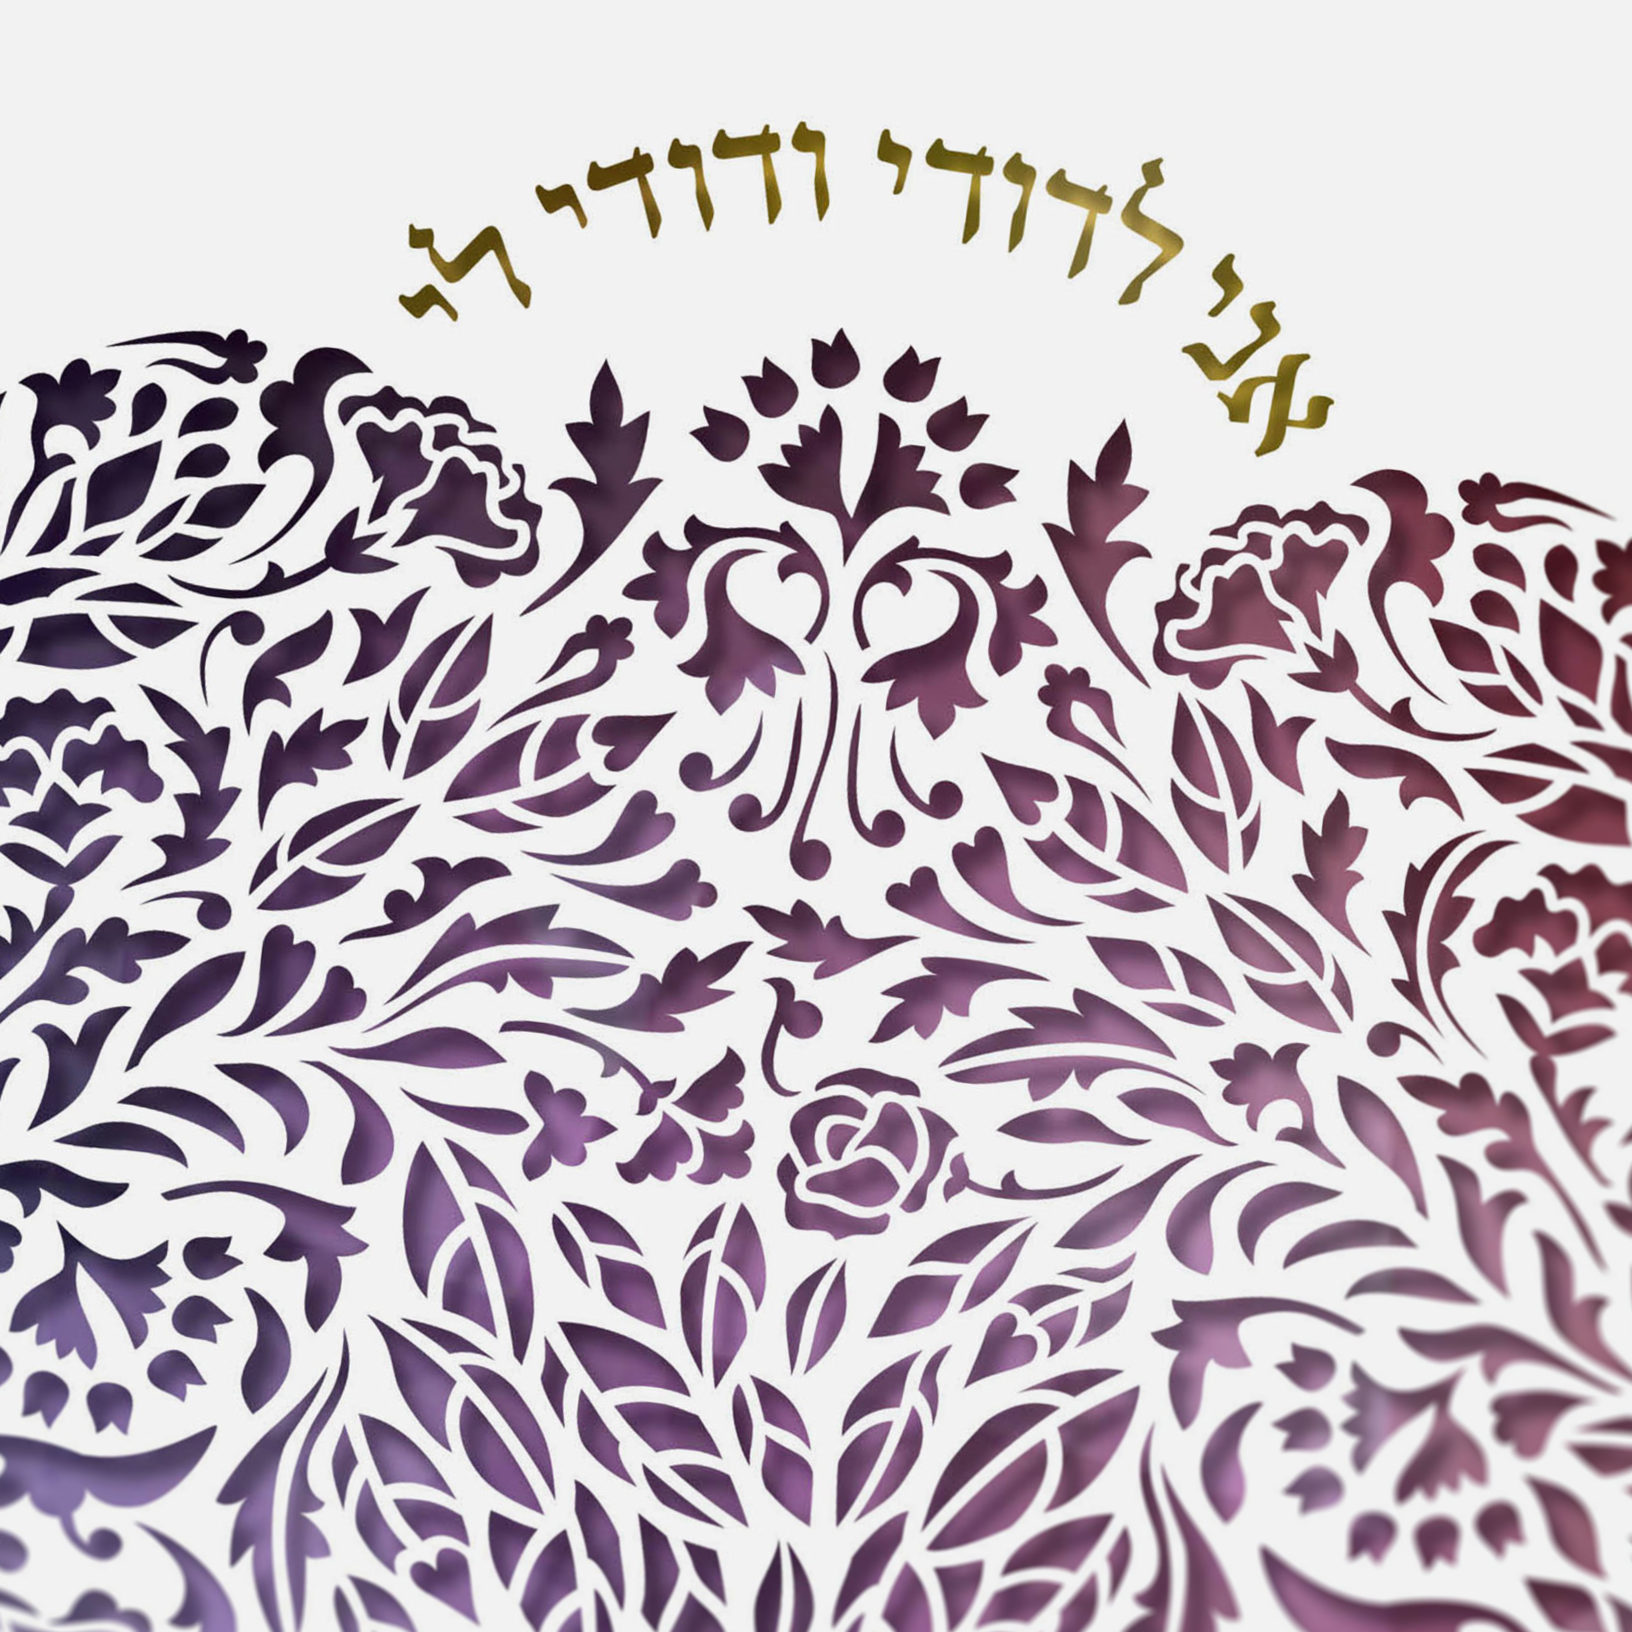 Enya Keshet Papercut Sukkat Shalom Metallic Papercut Precious Wine Ketubah Designs